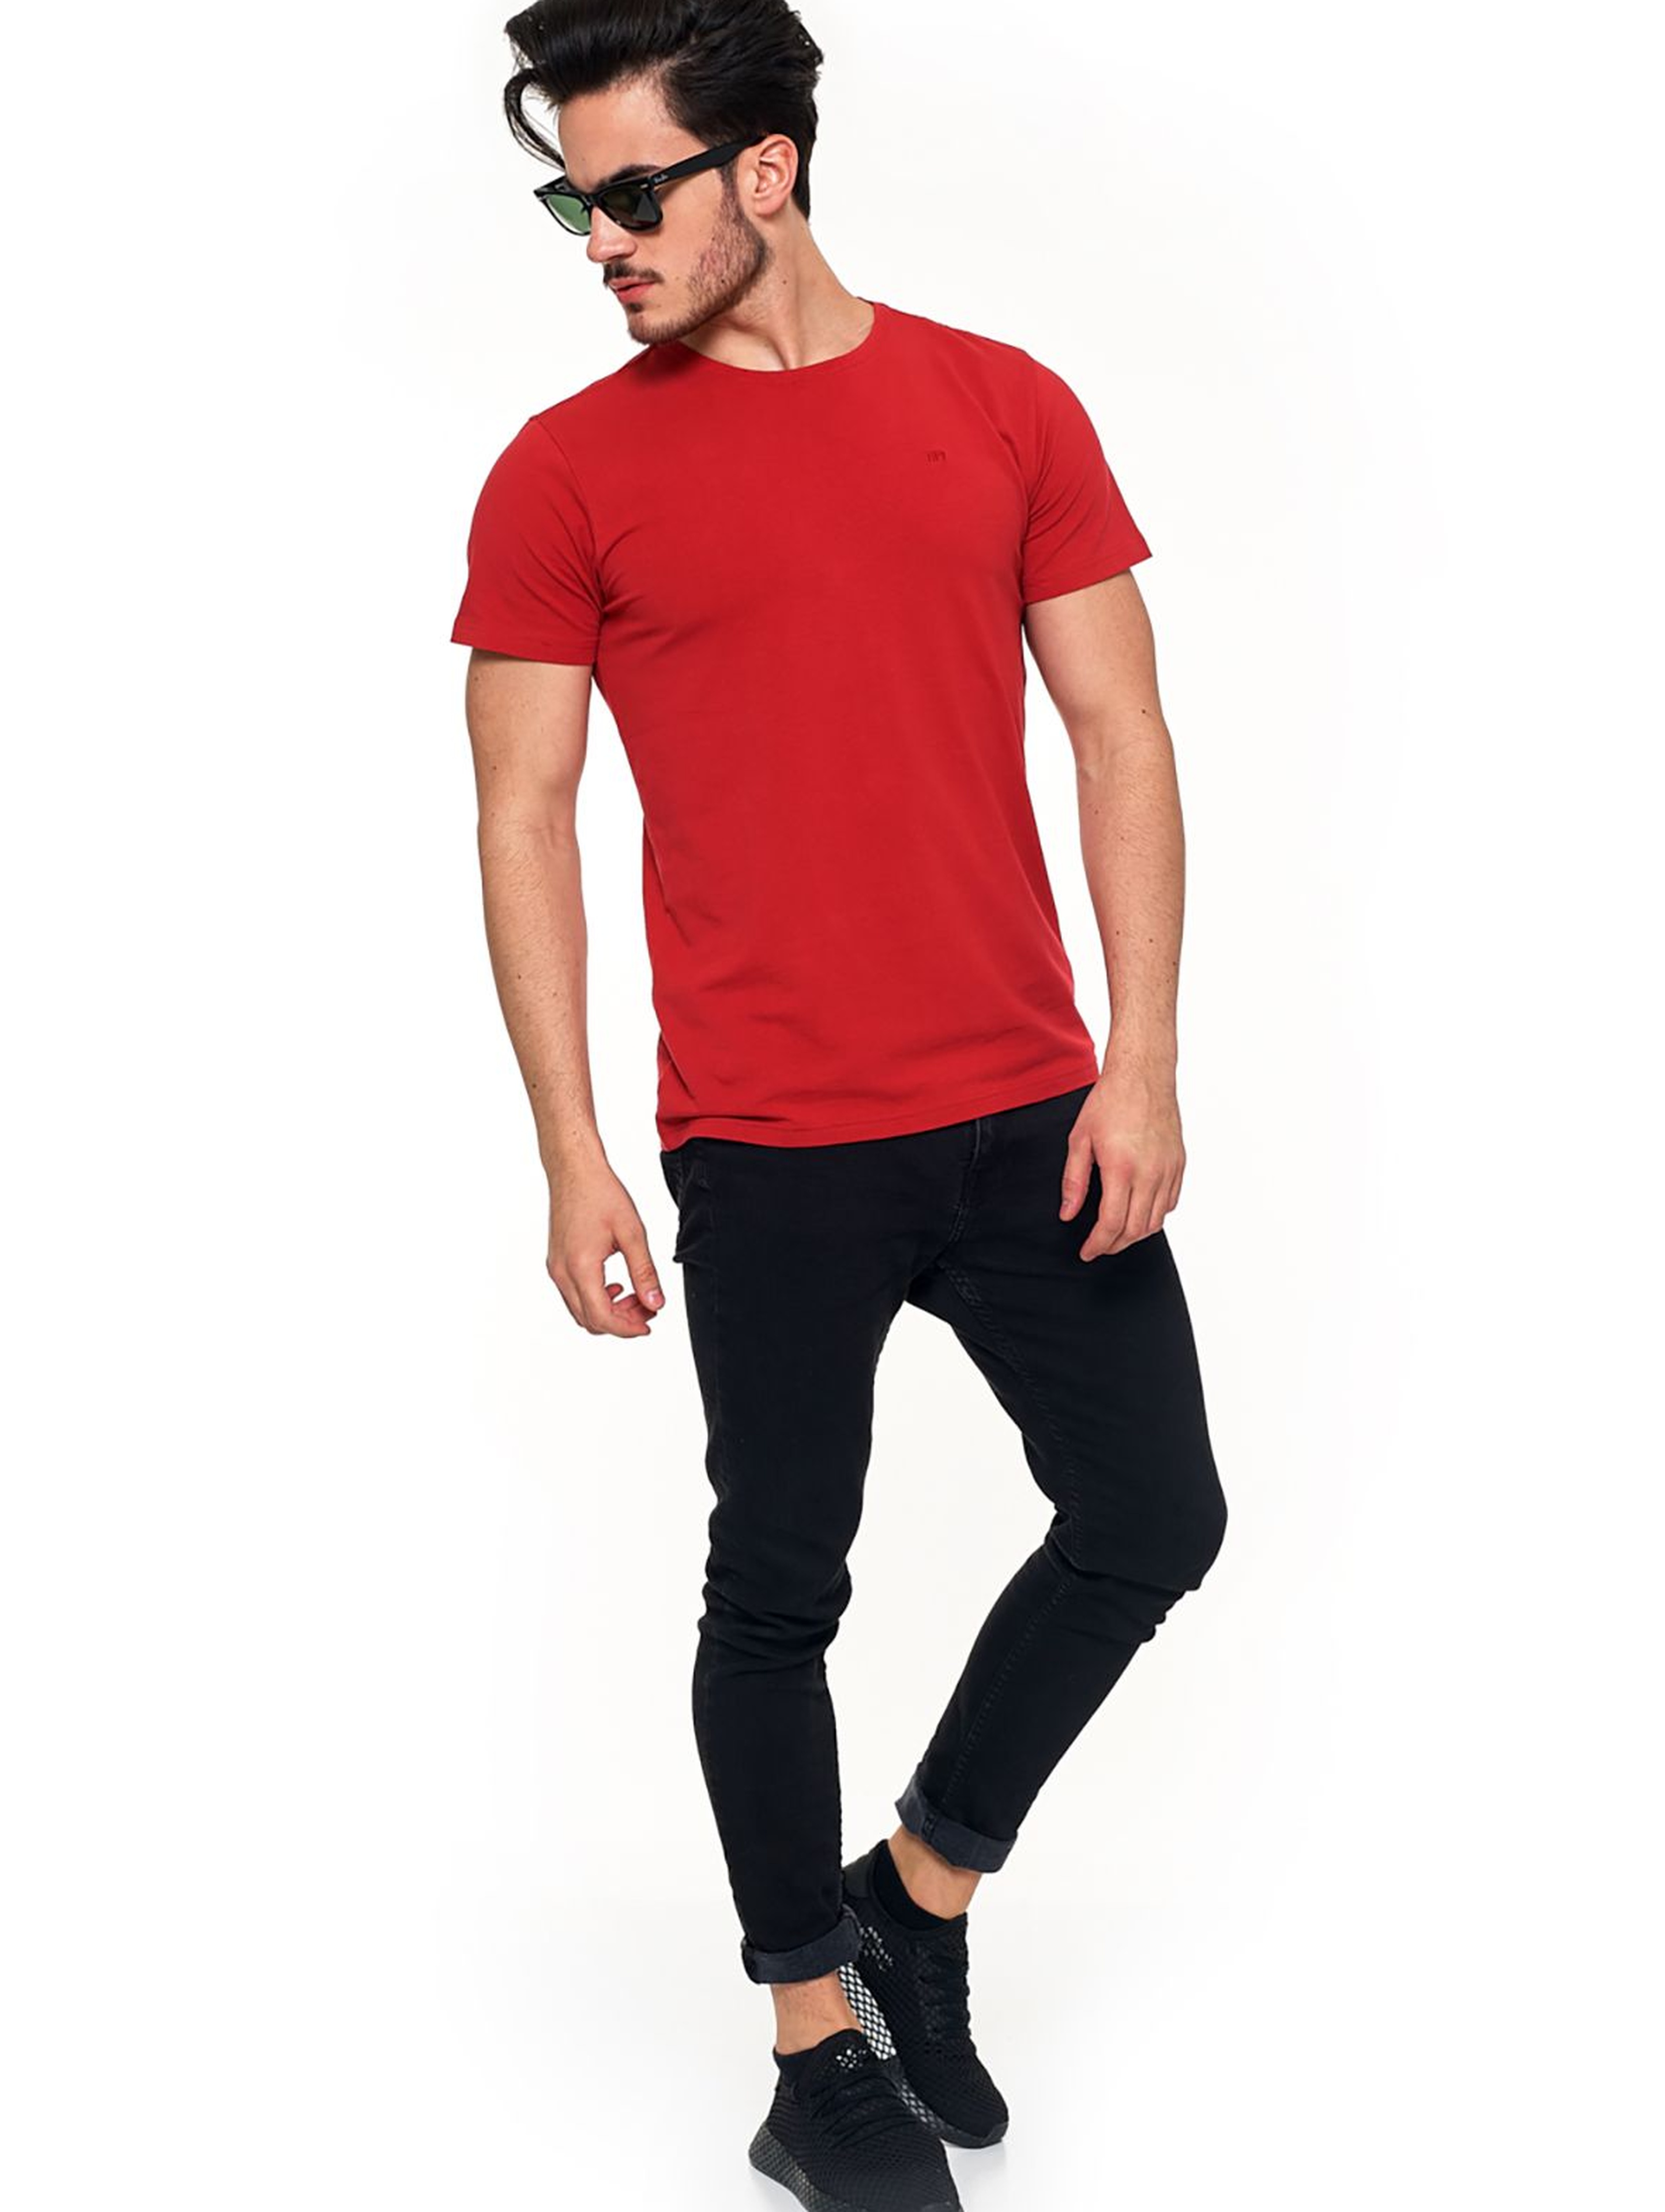 T-shirt męski premium czerwony